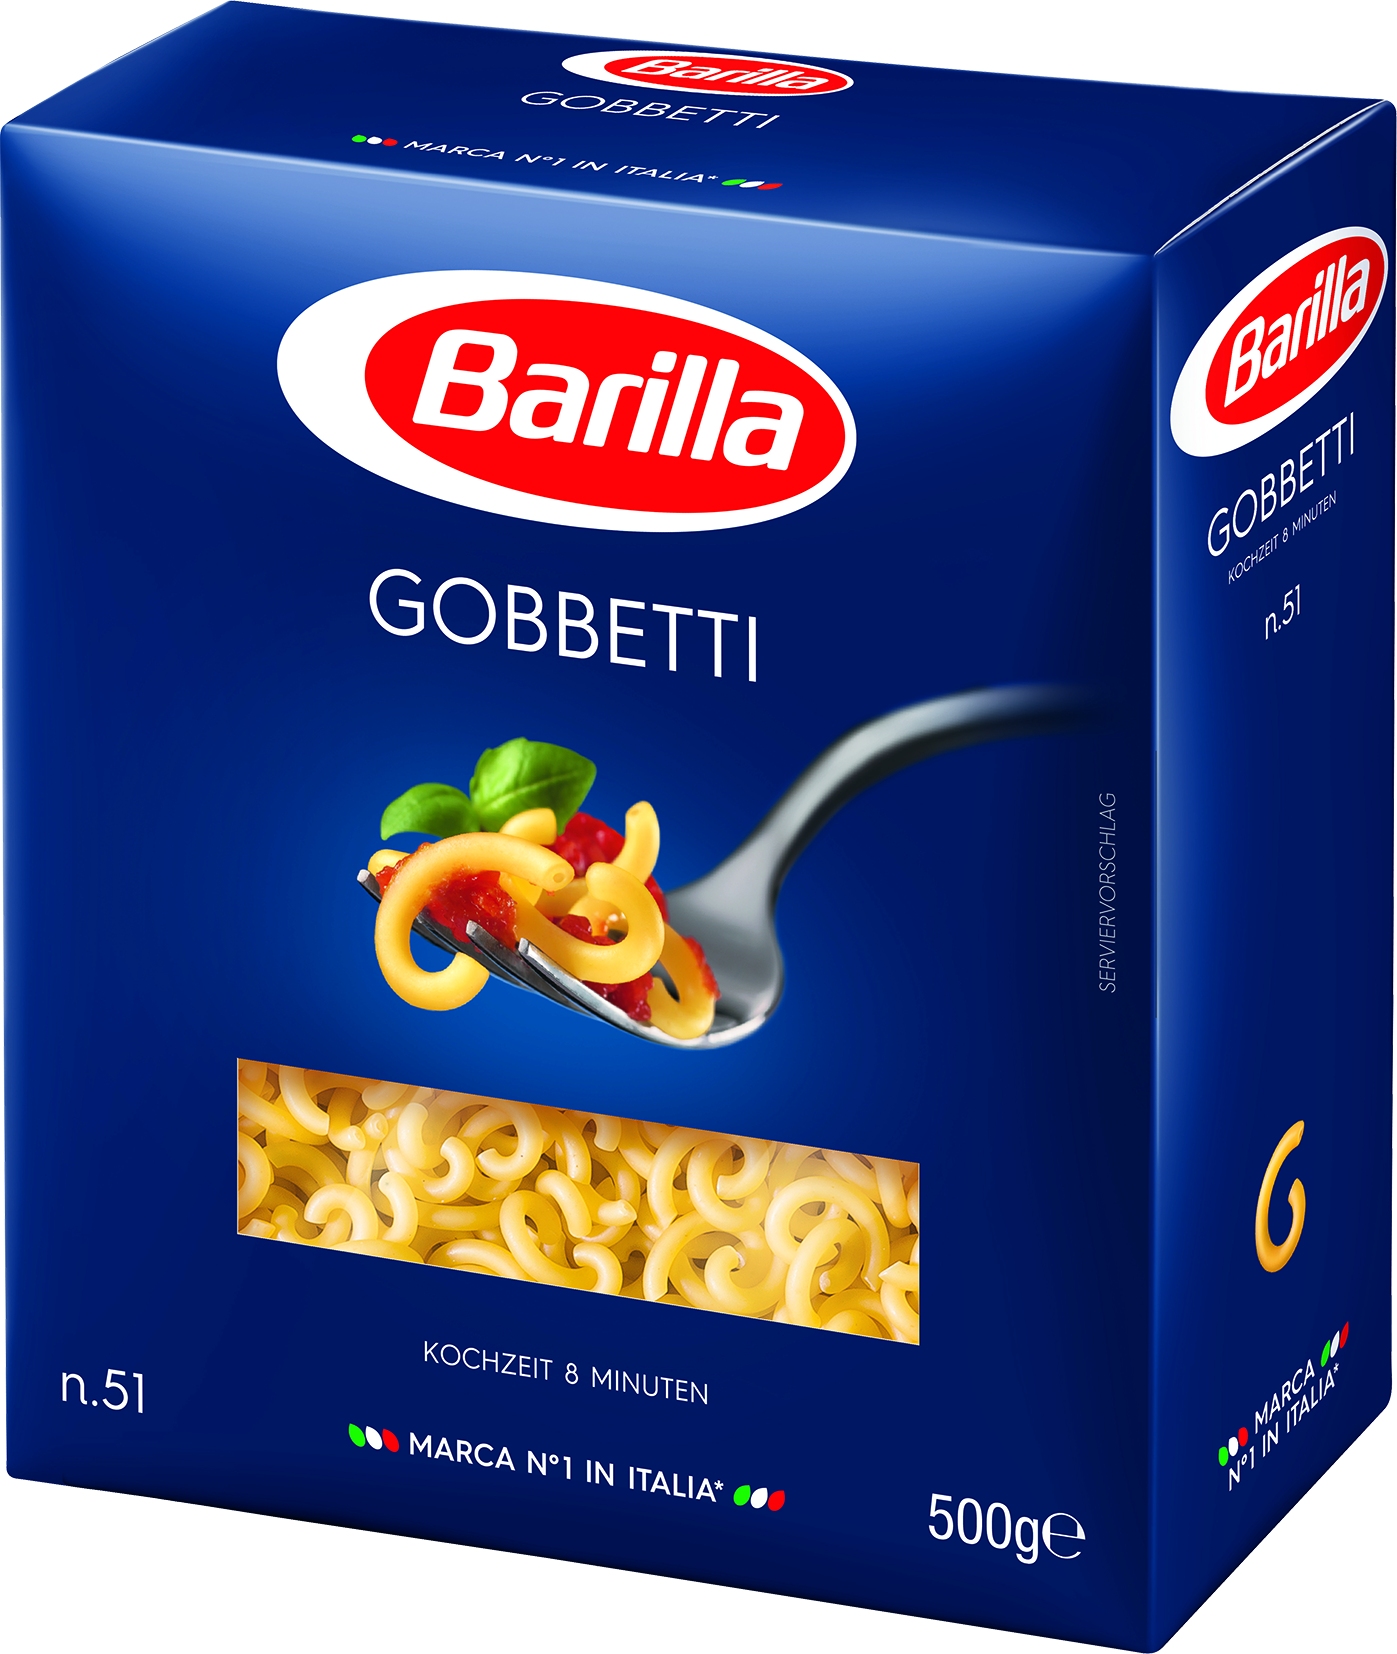 Gobbetti No.51